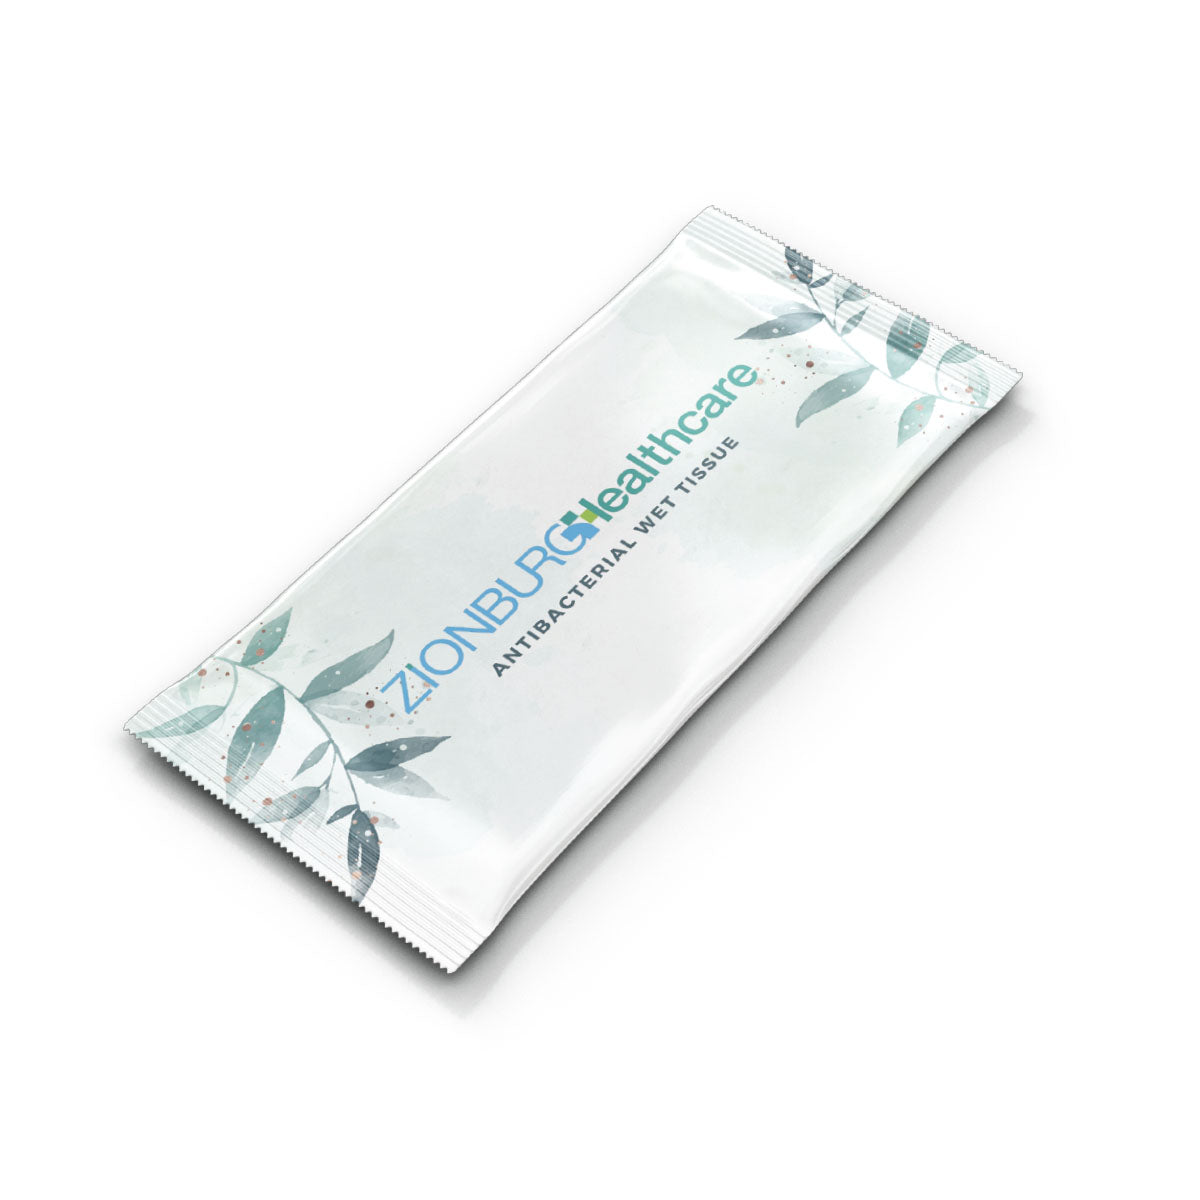 世安堡生物降解抗菌濕紙巾獨立50片/盒 - 白色